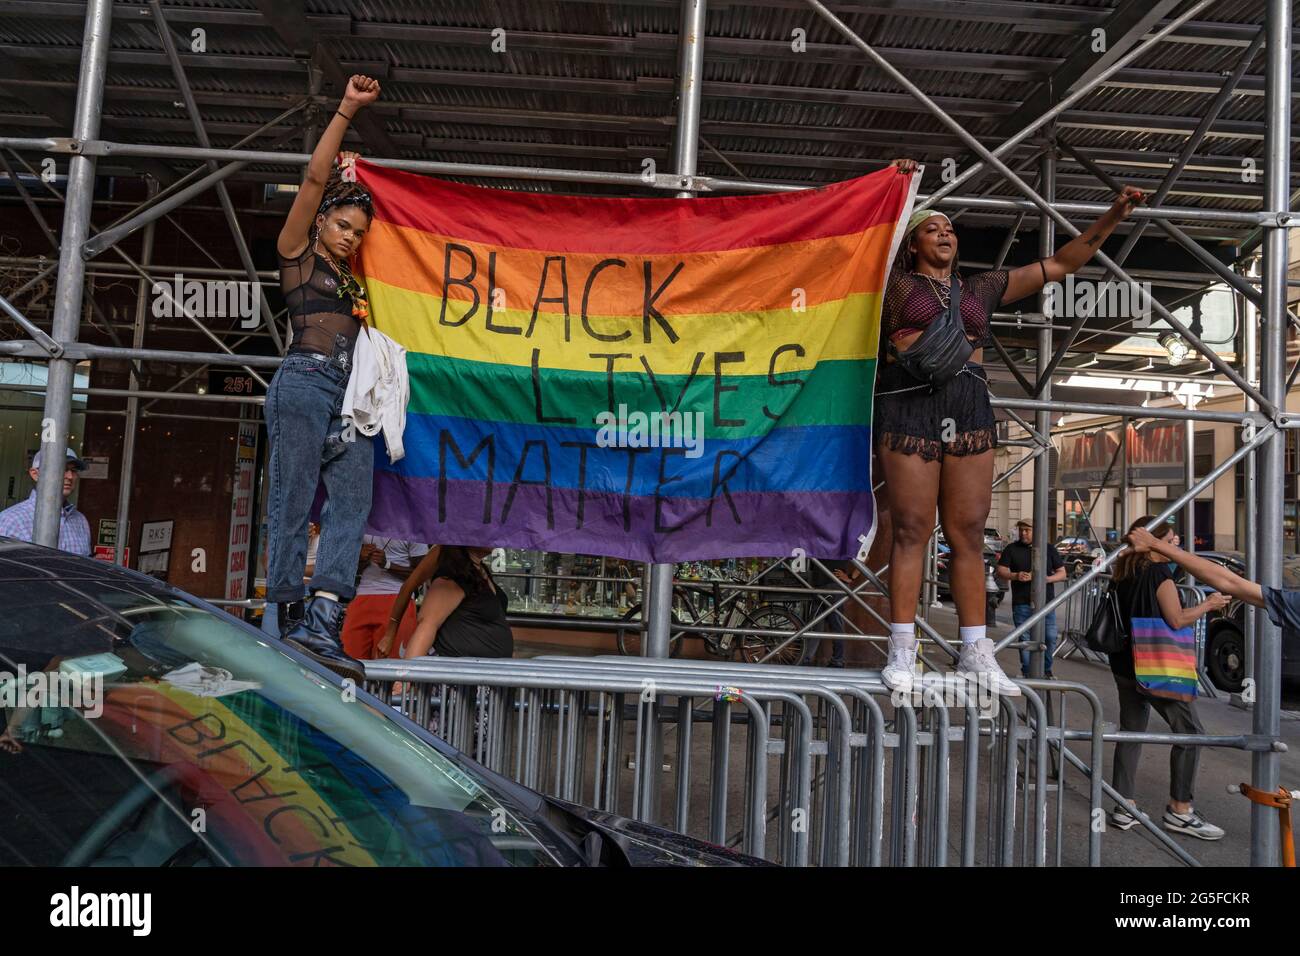 Während des marsches in New York City halten Frauen eine Pride-Flagge auf schwarzer Live-Angelegenheit.Tausende von Menschen marschieren während des 29. Jährlichen New York City Dyke March. Der Dike-Marsch, der sich selbst eher als Marschprotest bezeichnet als als eine Parade, ist laut ihrer Website eine "Demonstration unseres Protestrechts des Ersten Zusatzartikels". Aufgrund der Coronavirus-Pandemie fand der marsch praktisch im Jahr 2020 statt. Der diesjährige märz begann im Bryant Park und endete im Washington Square Park. Stockfoto